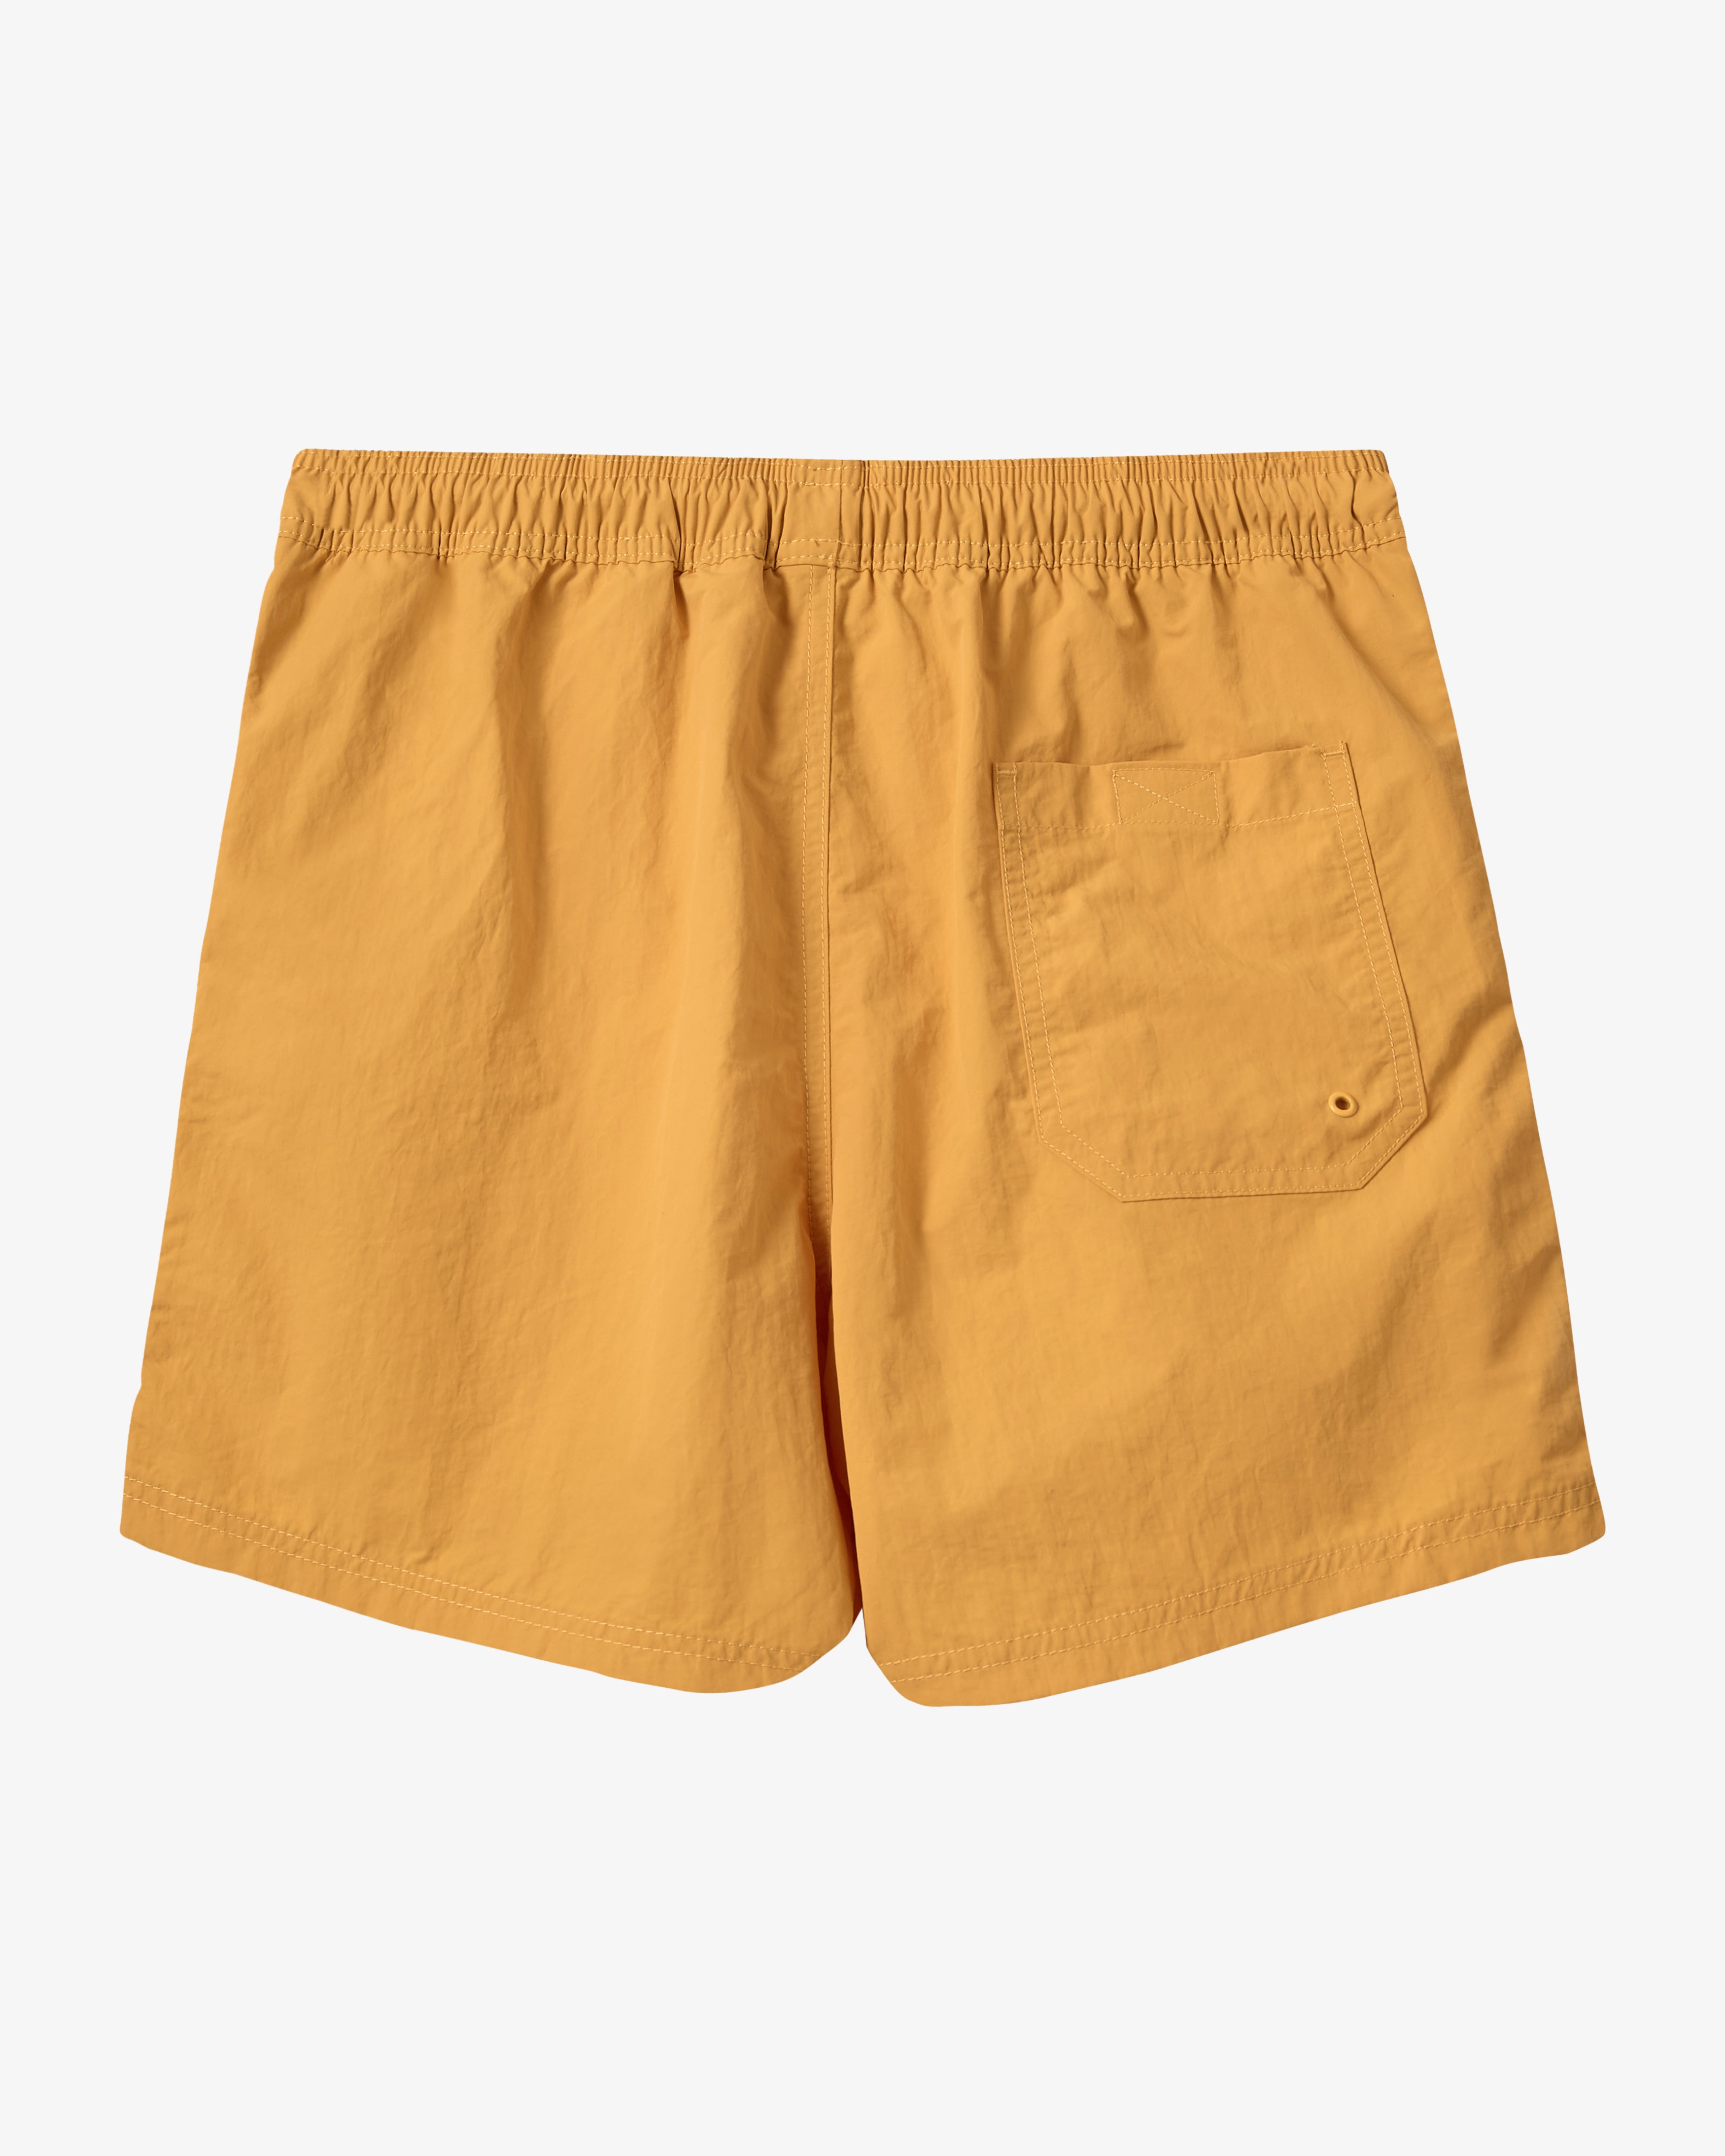 H2O Leisure Logo Badeshorts Shorts 2049 Apricot